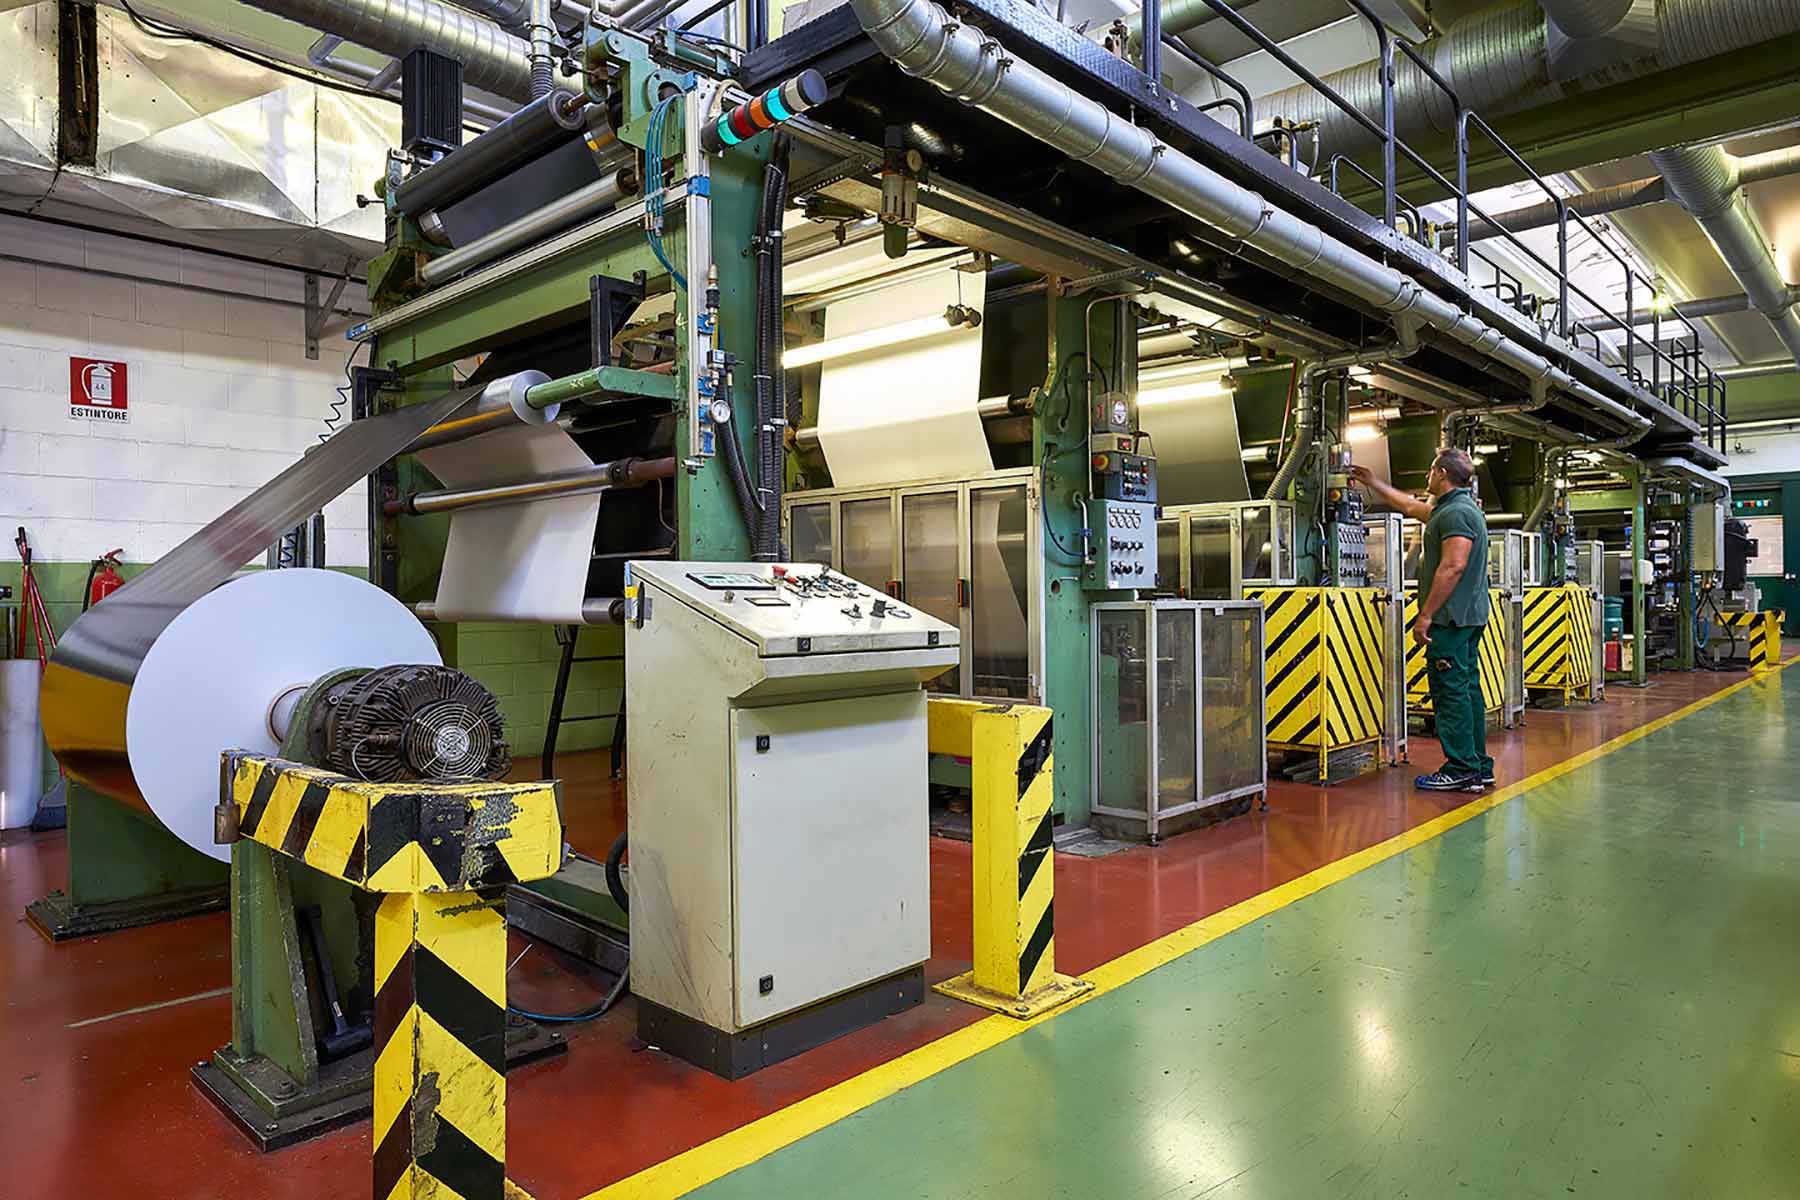 Novacart production plant machineries